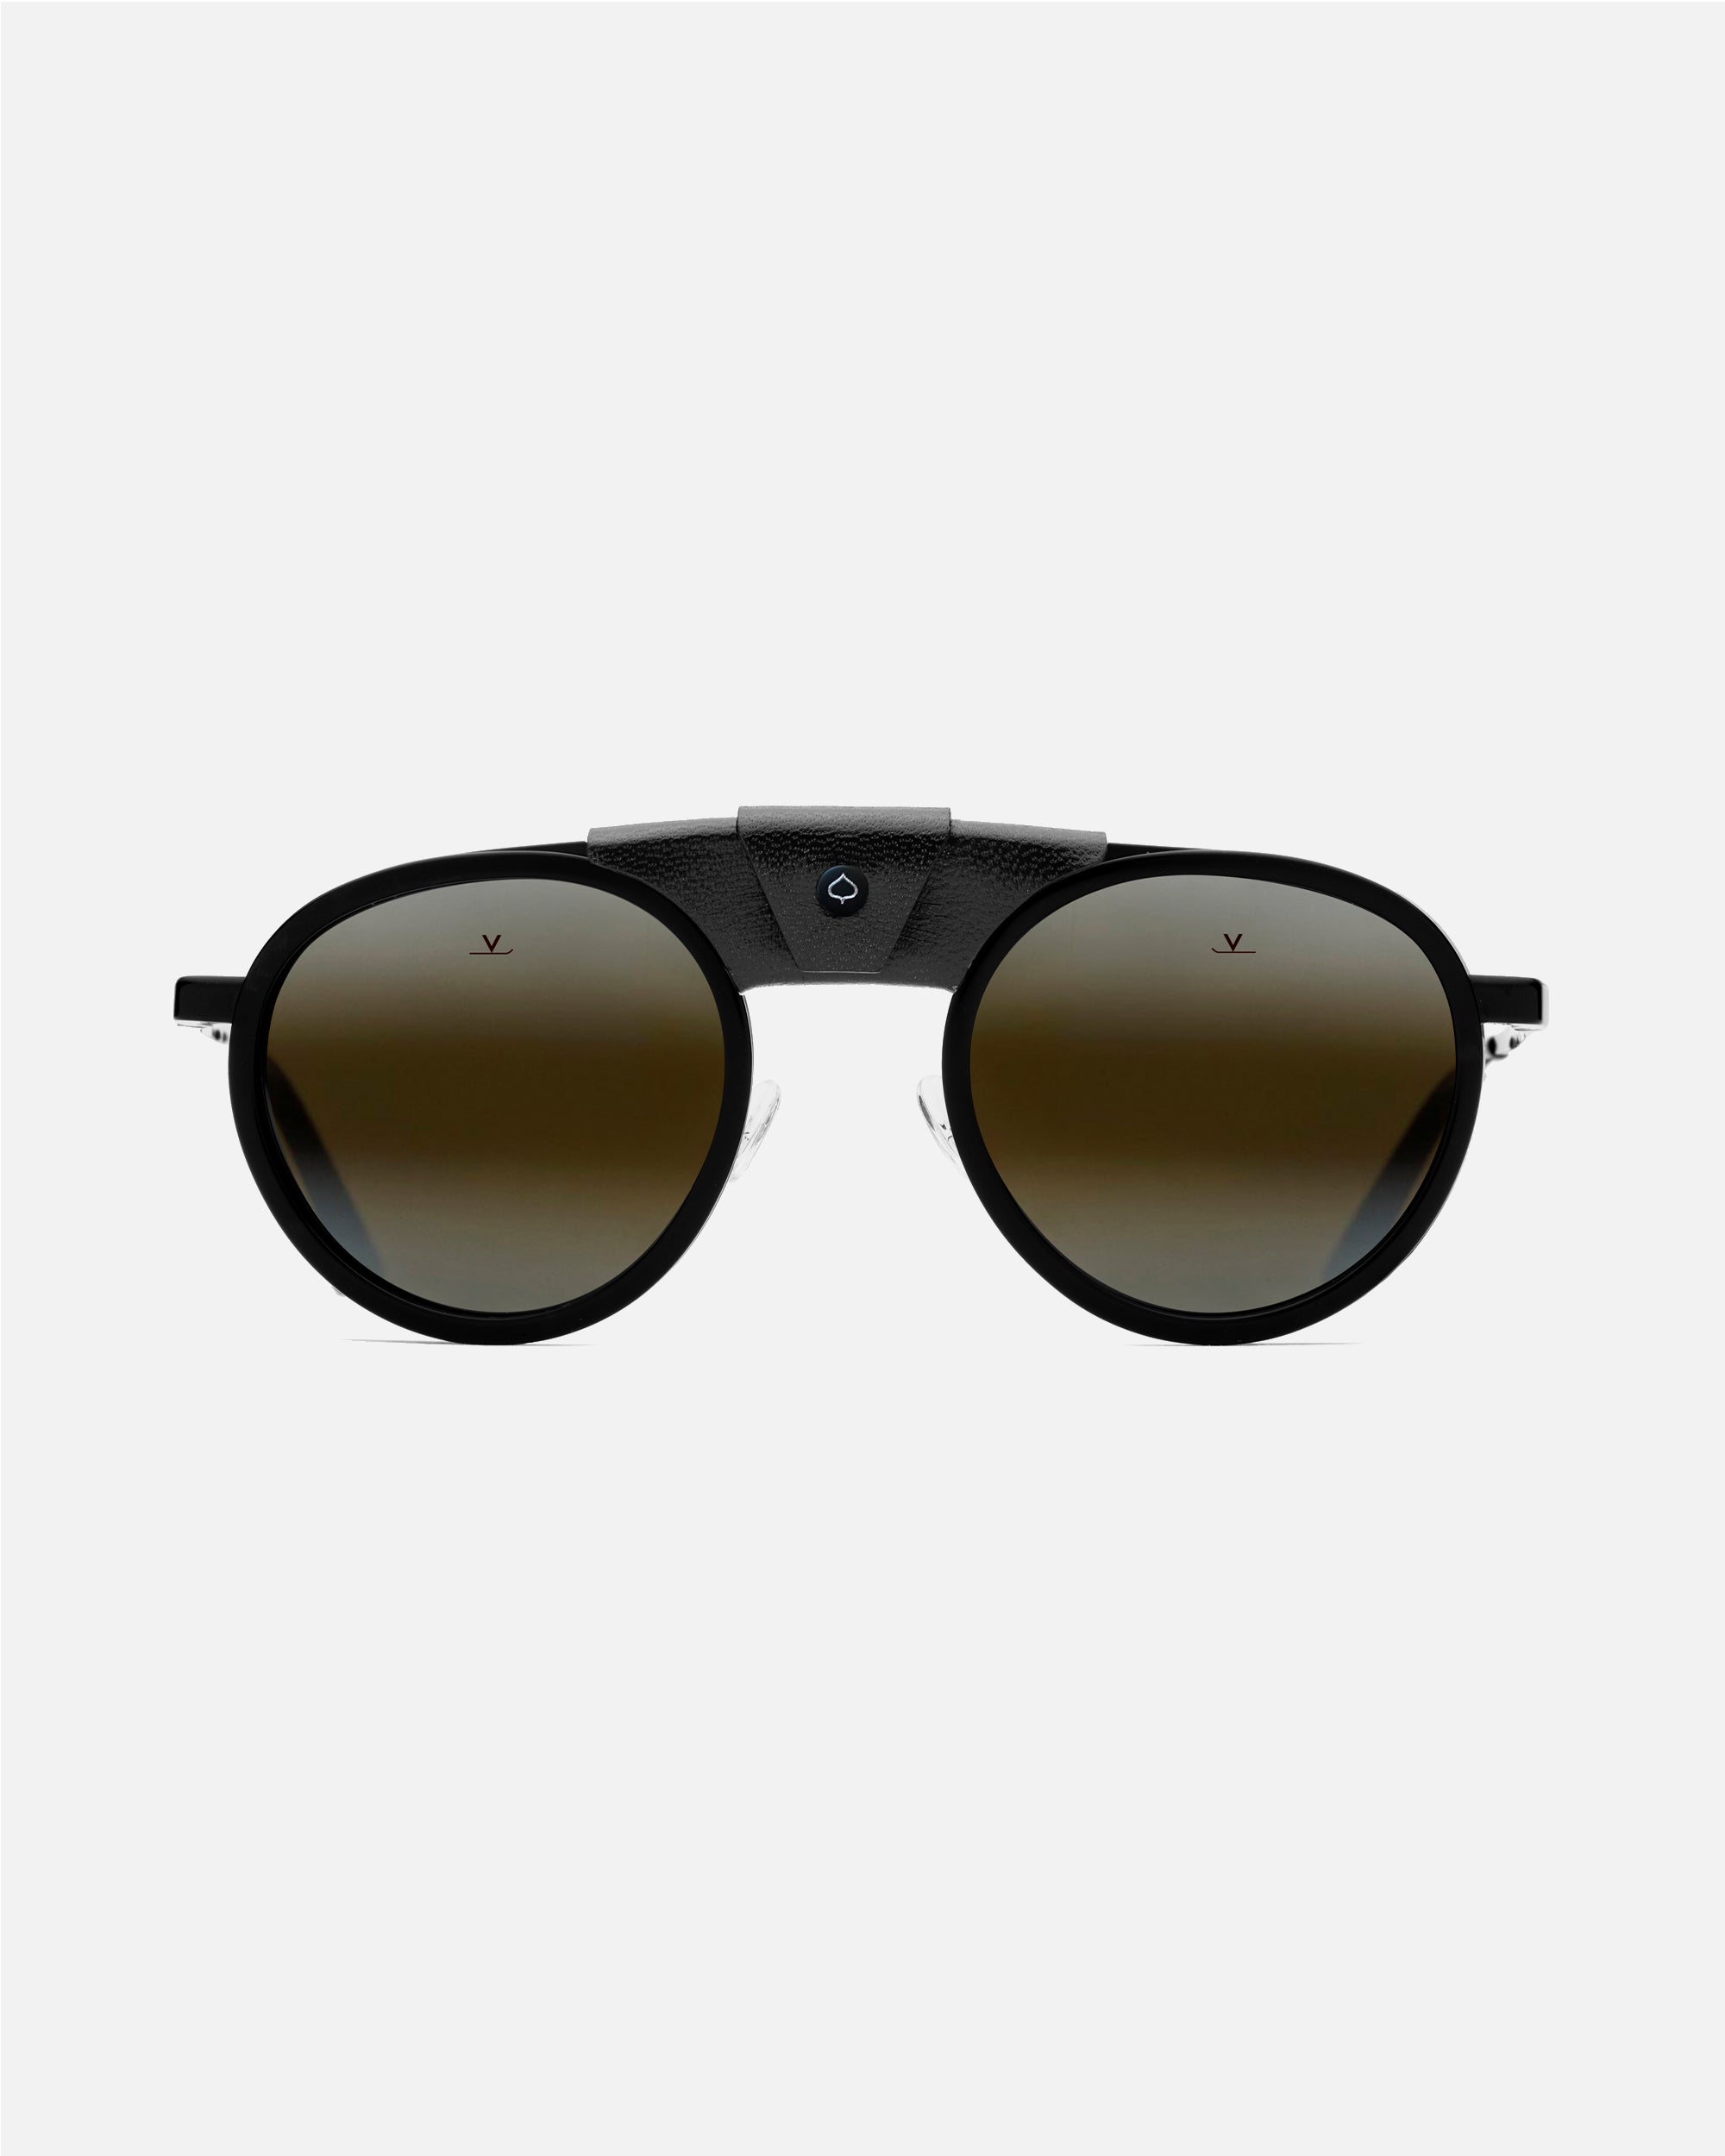 Vuarnet VL1613 EDGE 0013 7184 Sunglasses | VisionDirect Australia